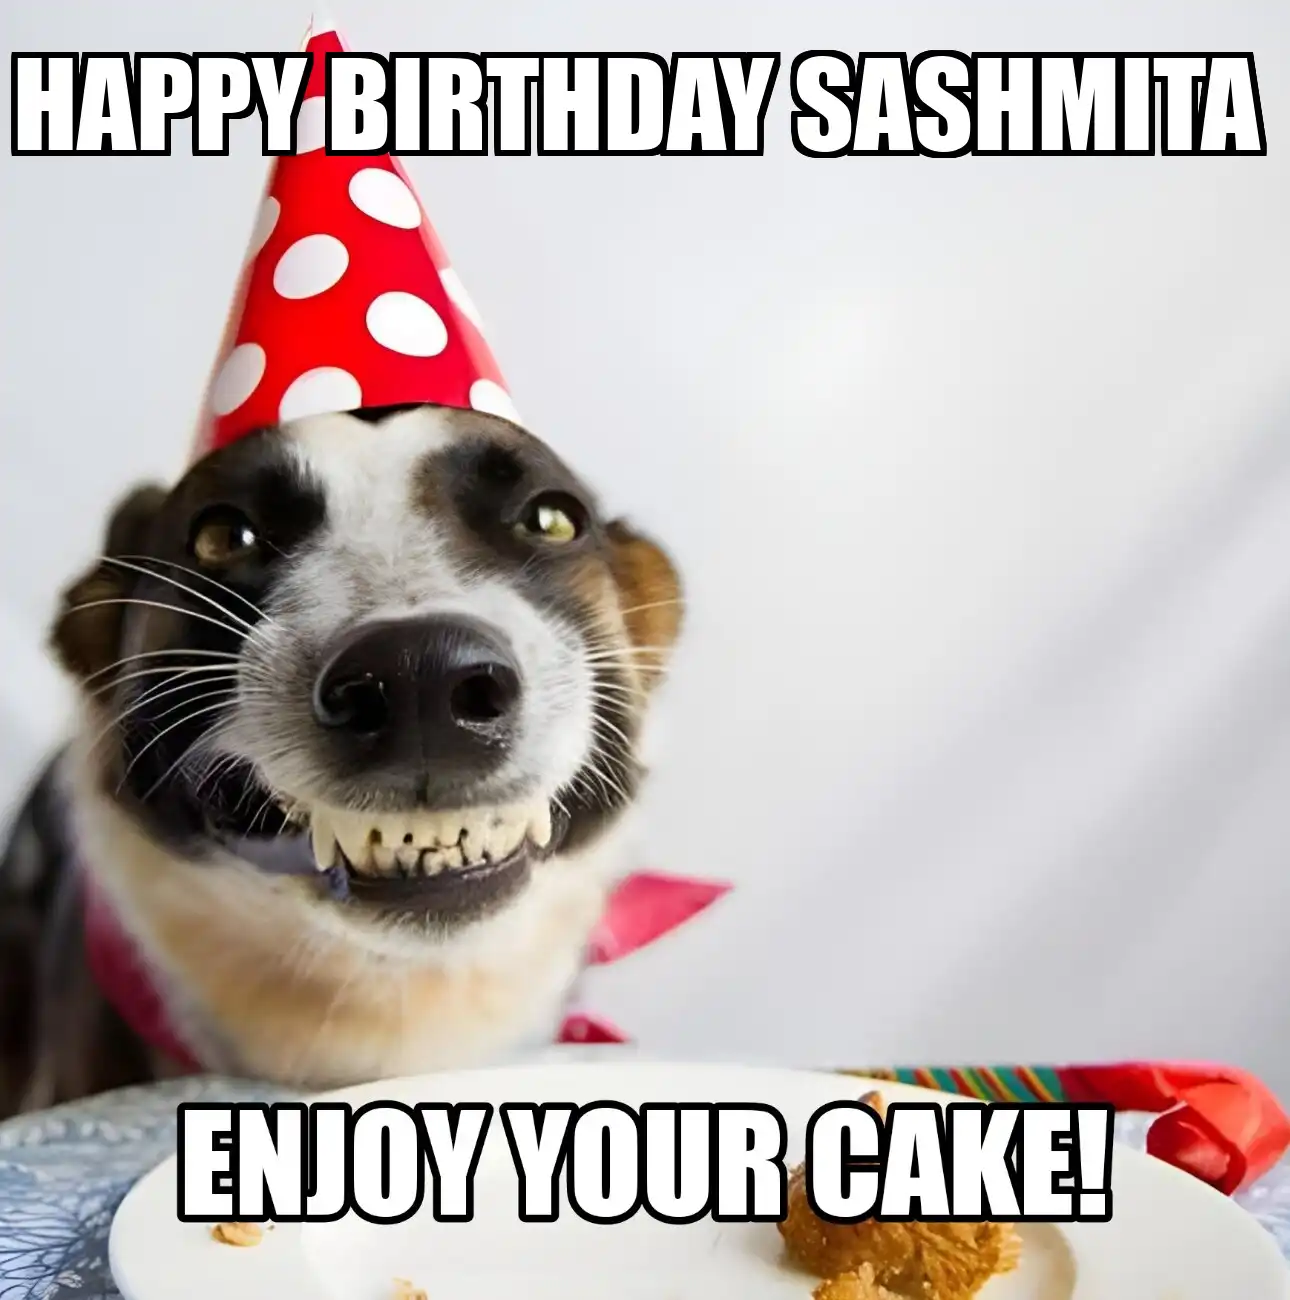 Happy Birthday Sashmita Enjoy Your Cake Dog Meme